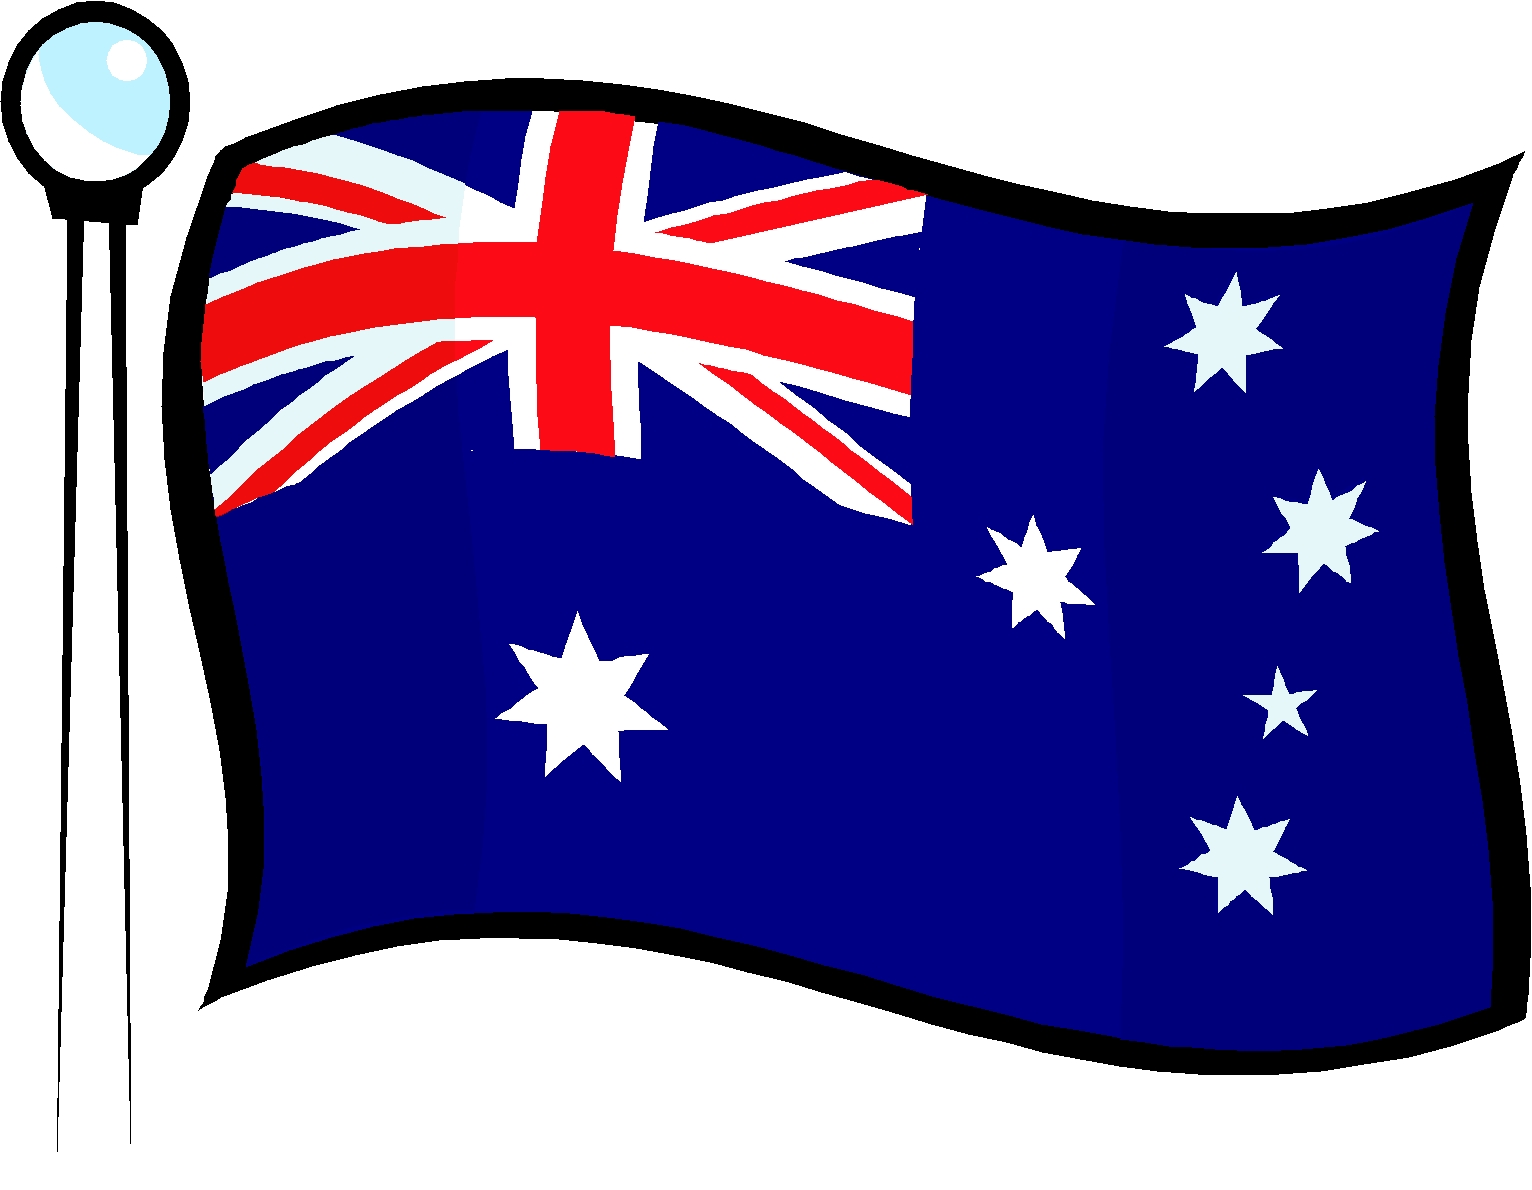 Australia Stainless Steel Dog Tag Australian Flag Chain   Ebay  Item